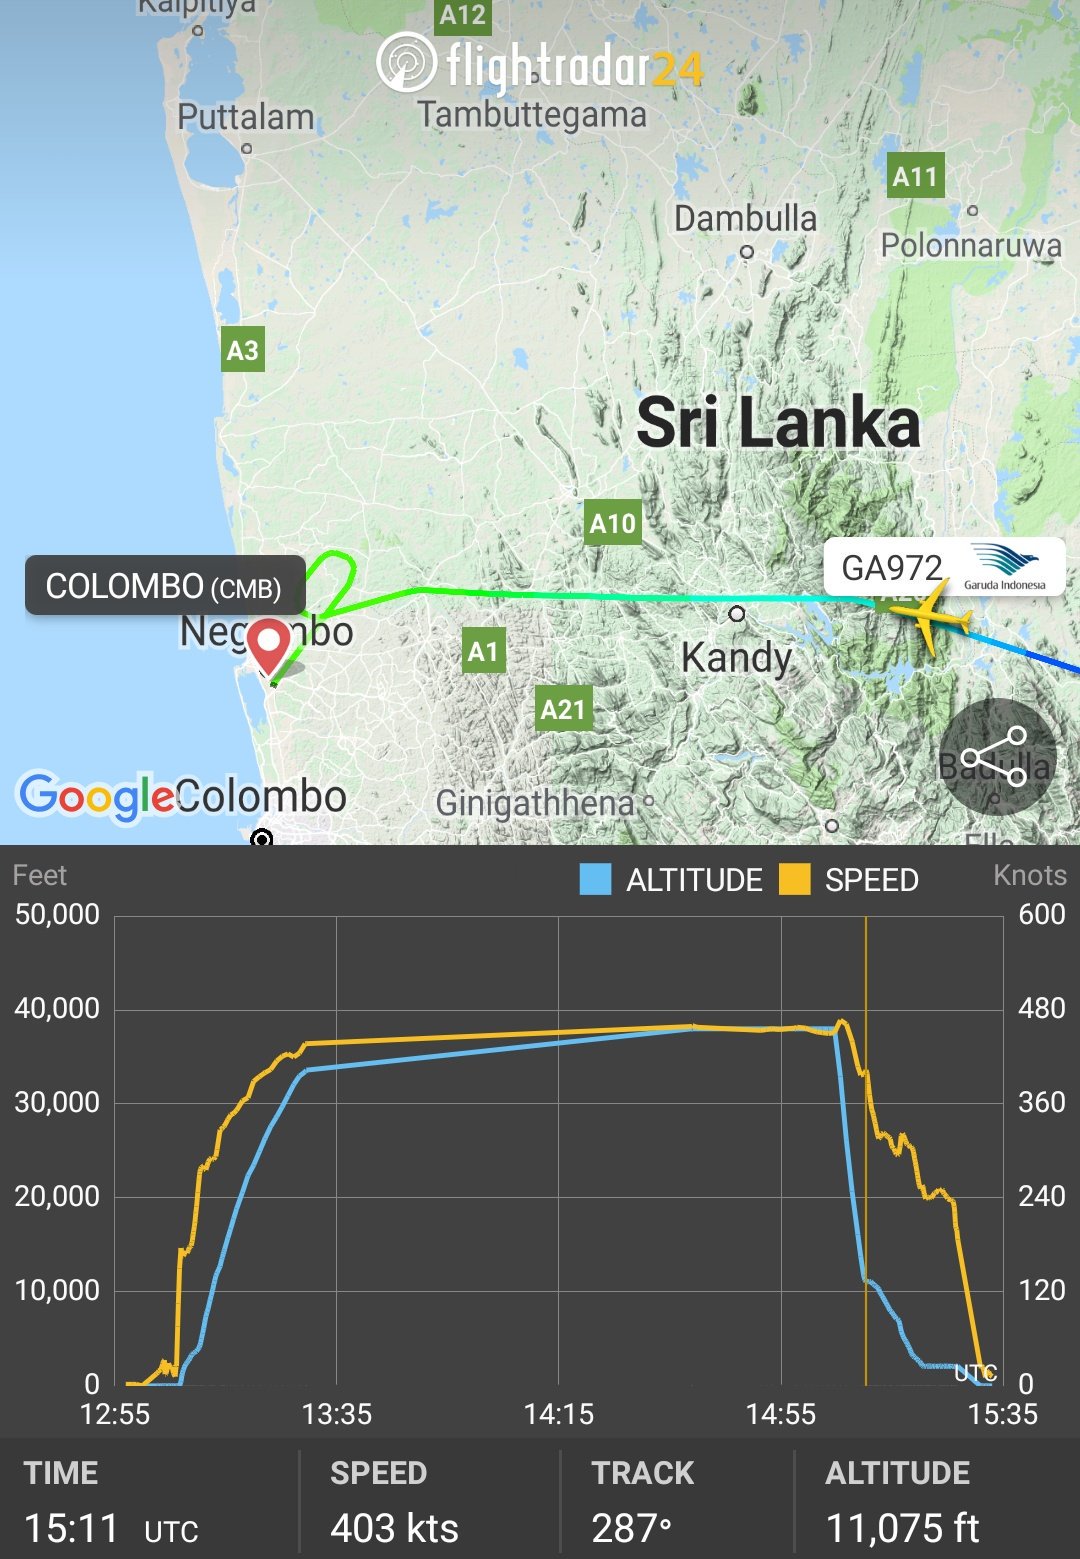 Ini Penyebab Garuda Indonesia Bernomor GA972 Mendarat Darurat di Kolombo